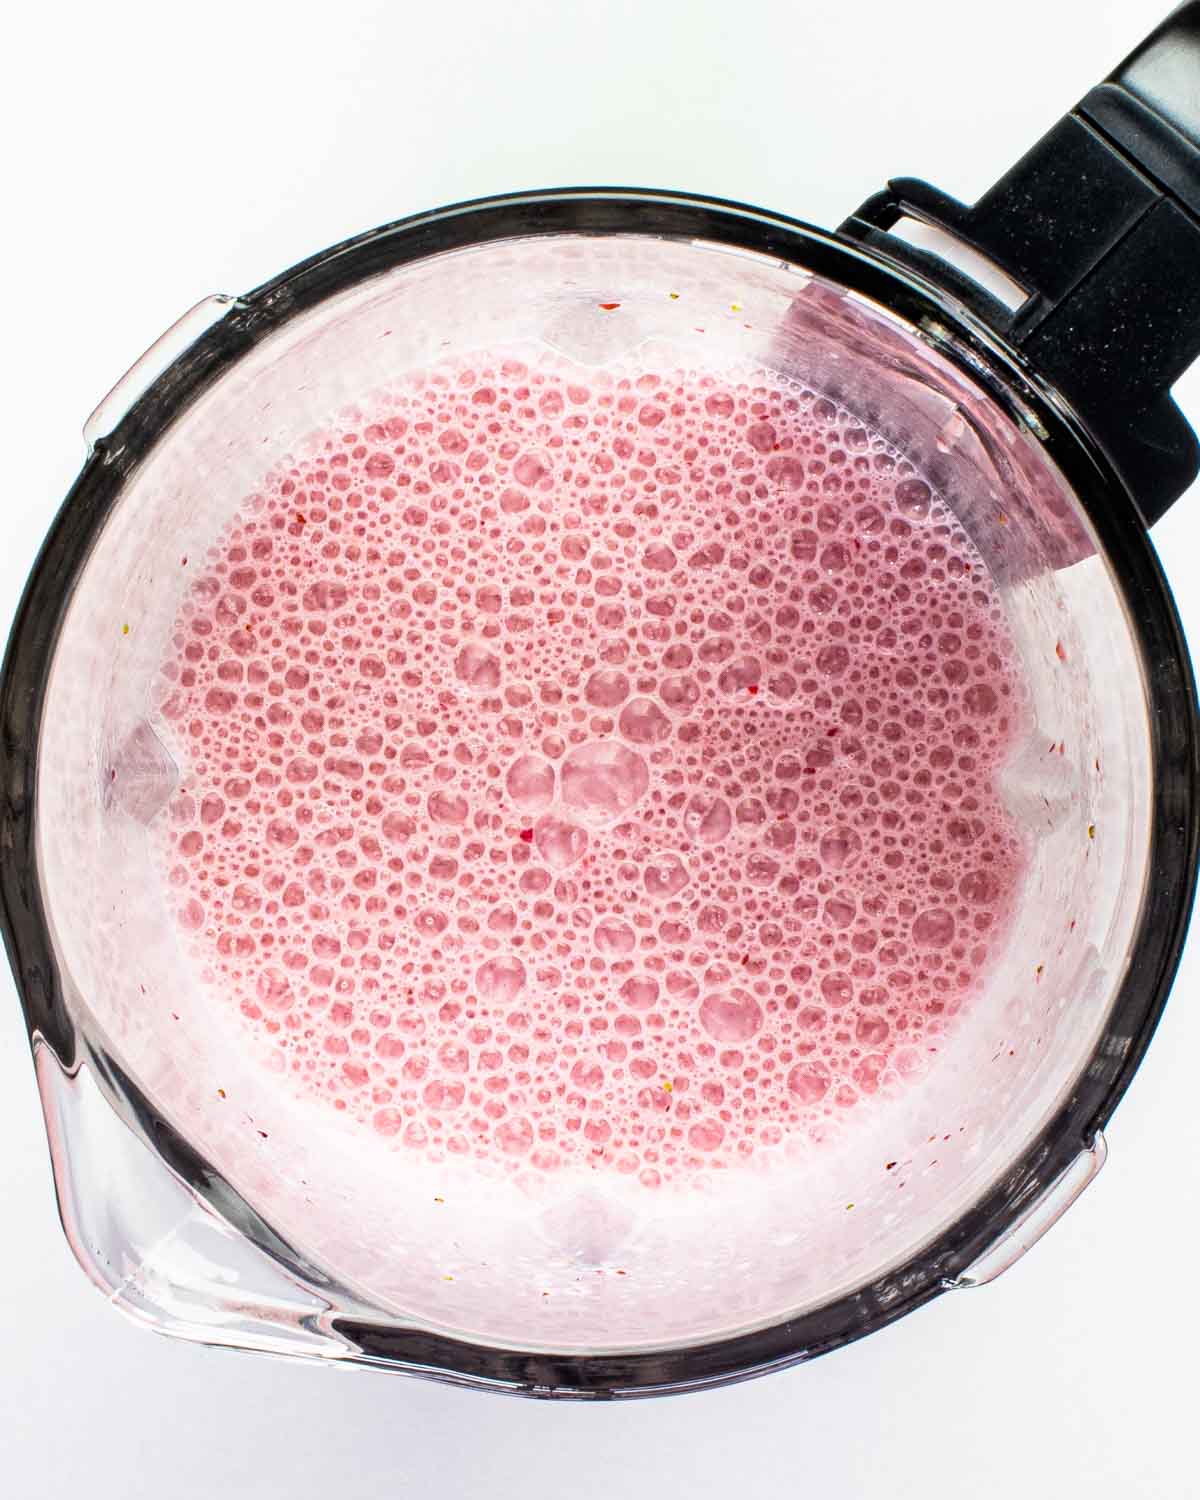 freshly blended strawberry milkshake in a blender.